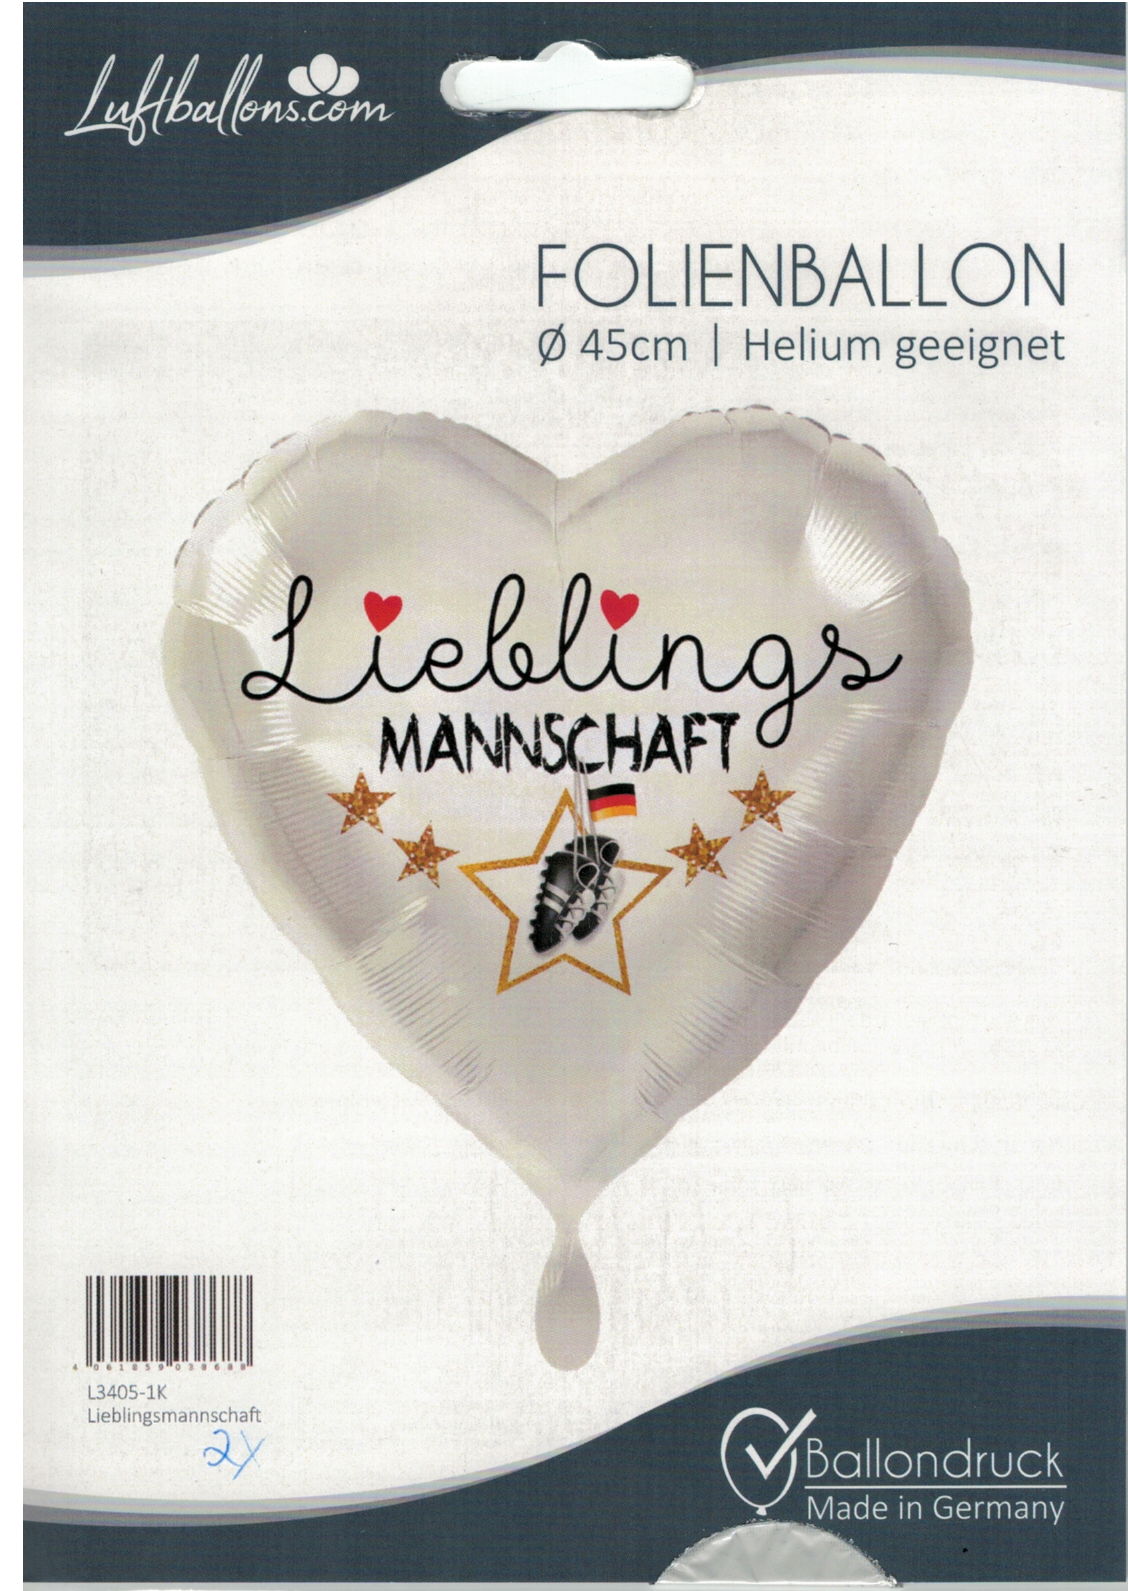 Folienballon Herz - Lieblingsmannschaft - 45cm